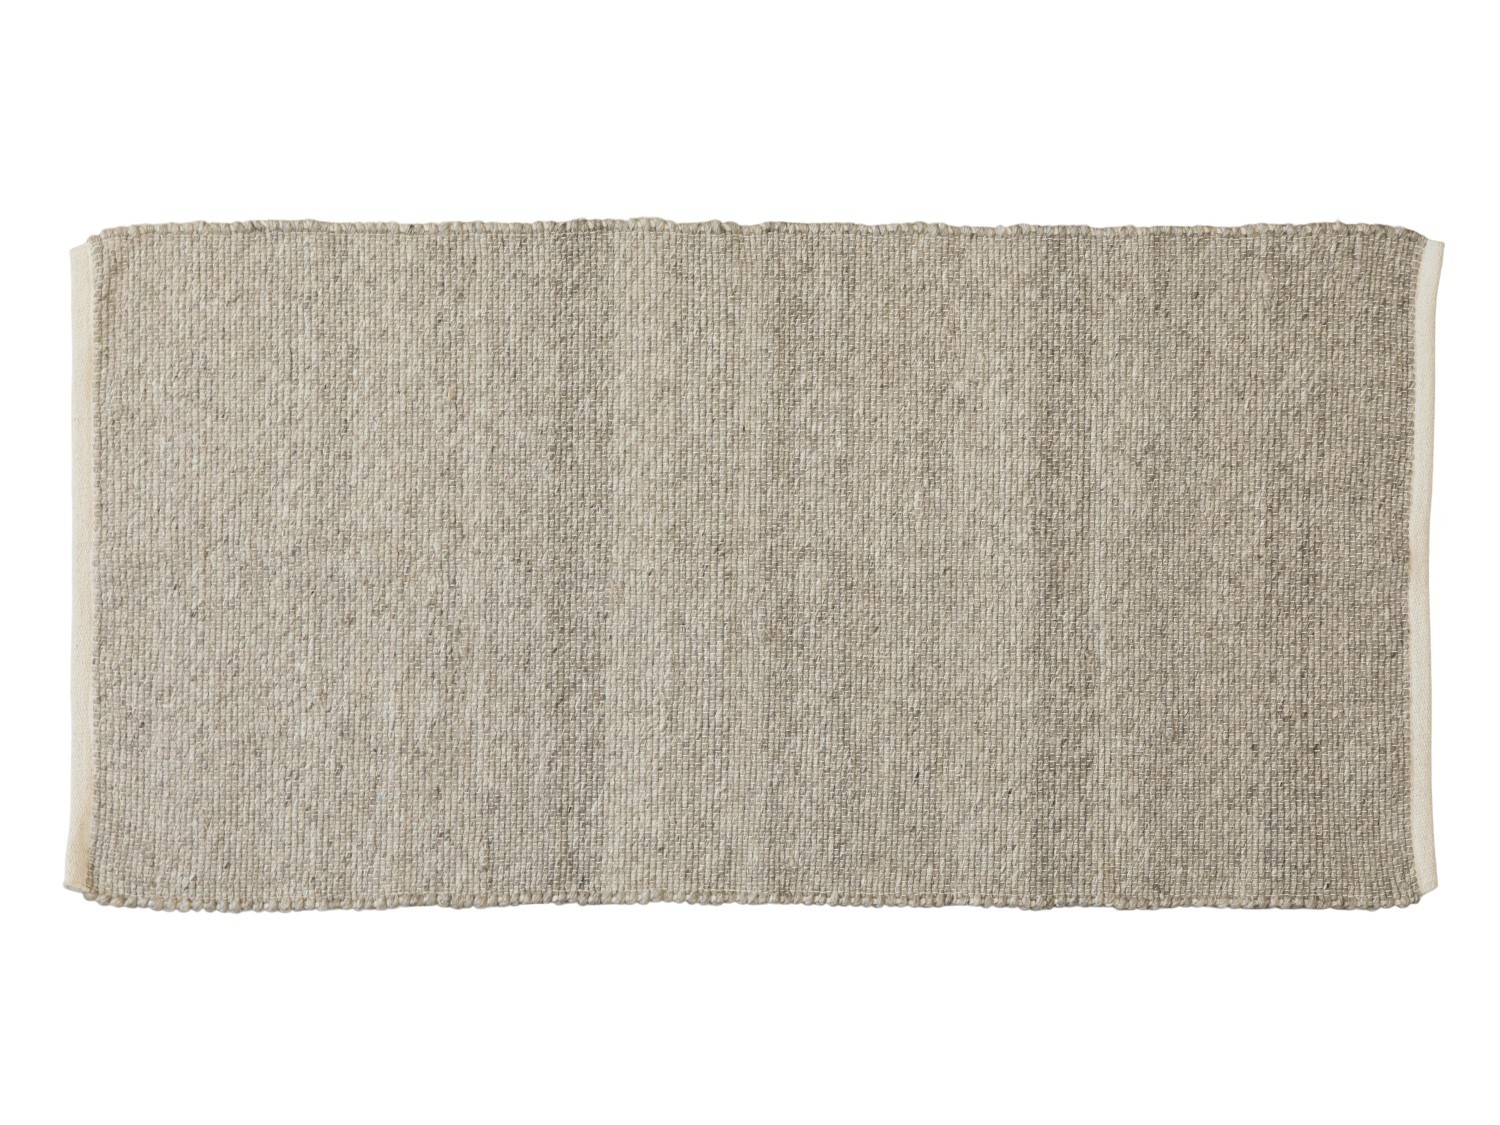 Přírodní antik koberec Rug natural - 70*150 cm Chic Antique